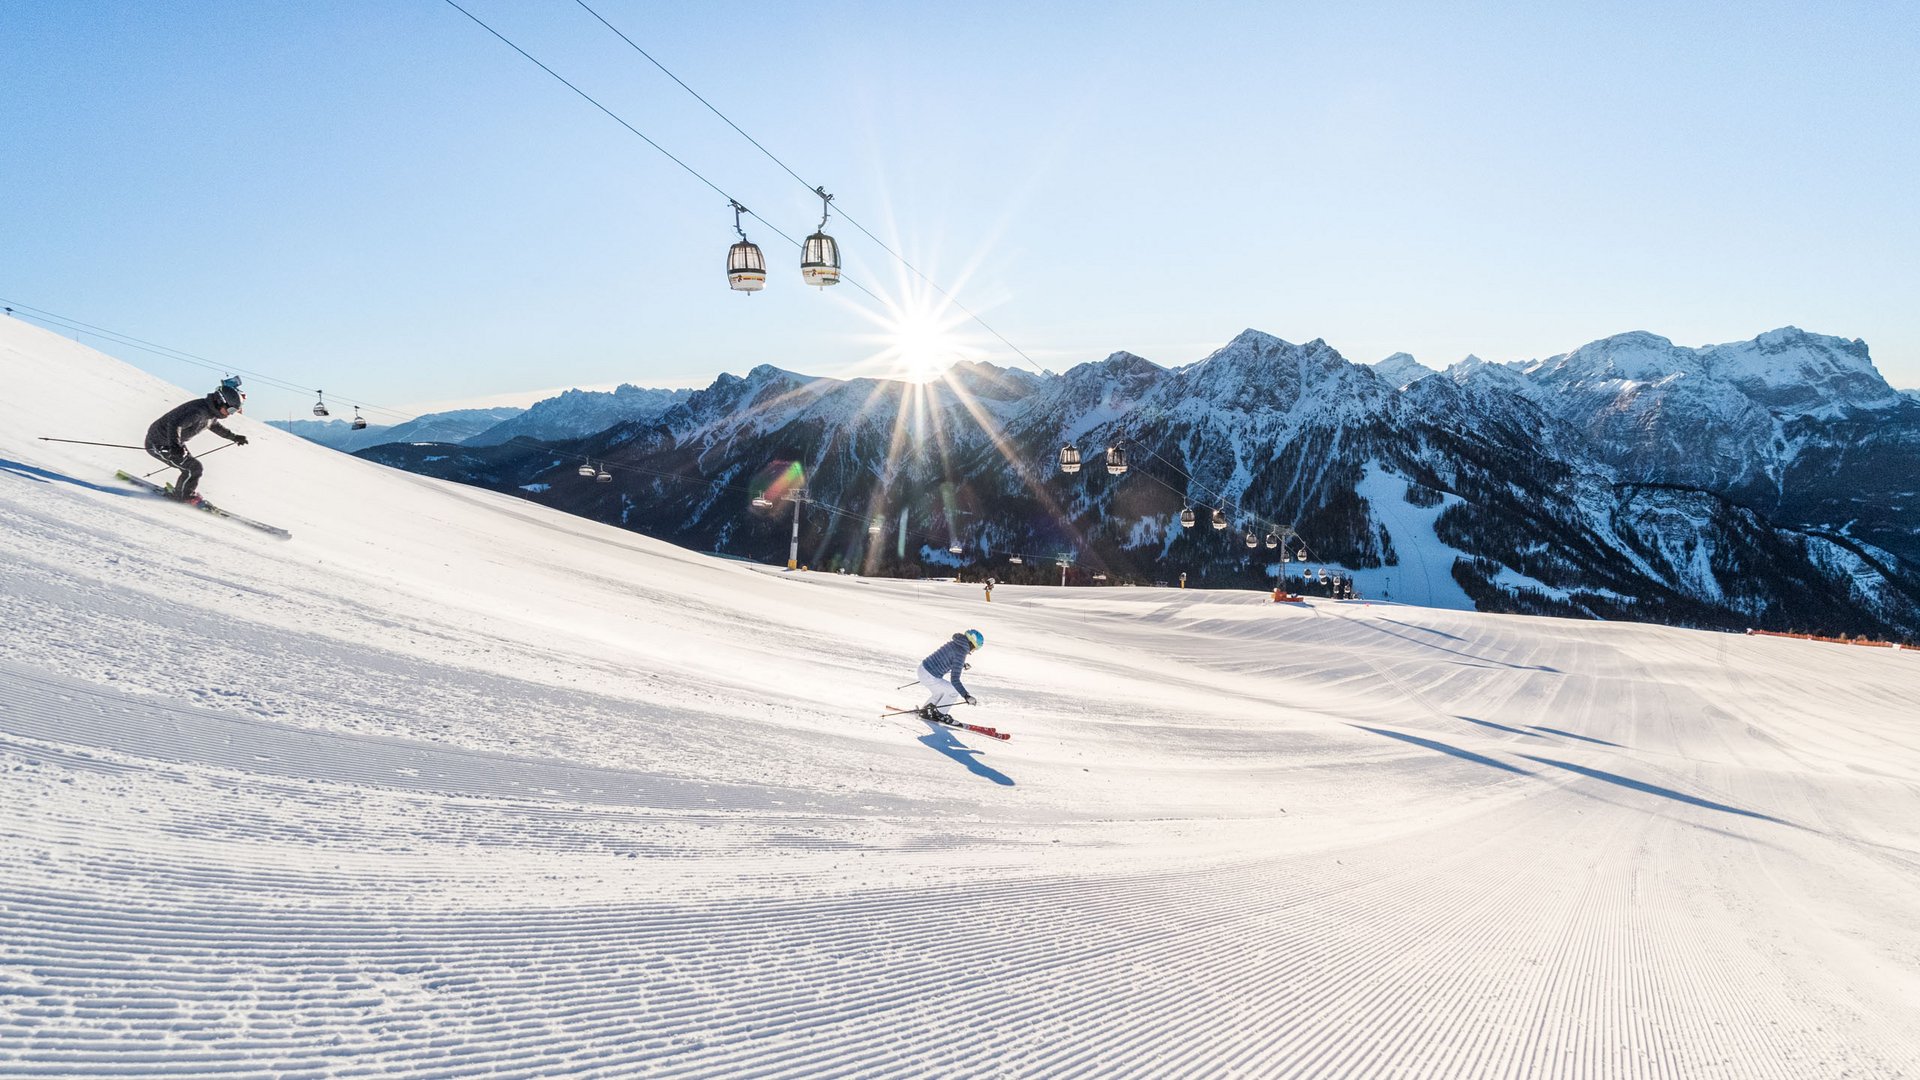 Winklerhotels: your sport, ski & bike hotel in South Tyrol